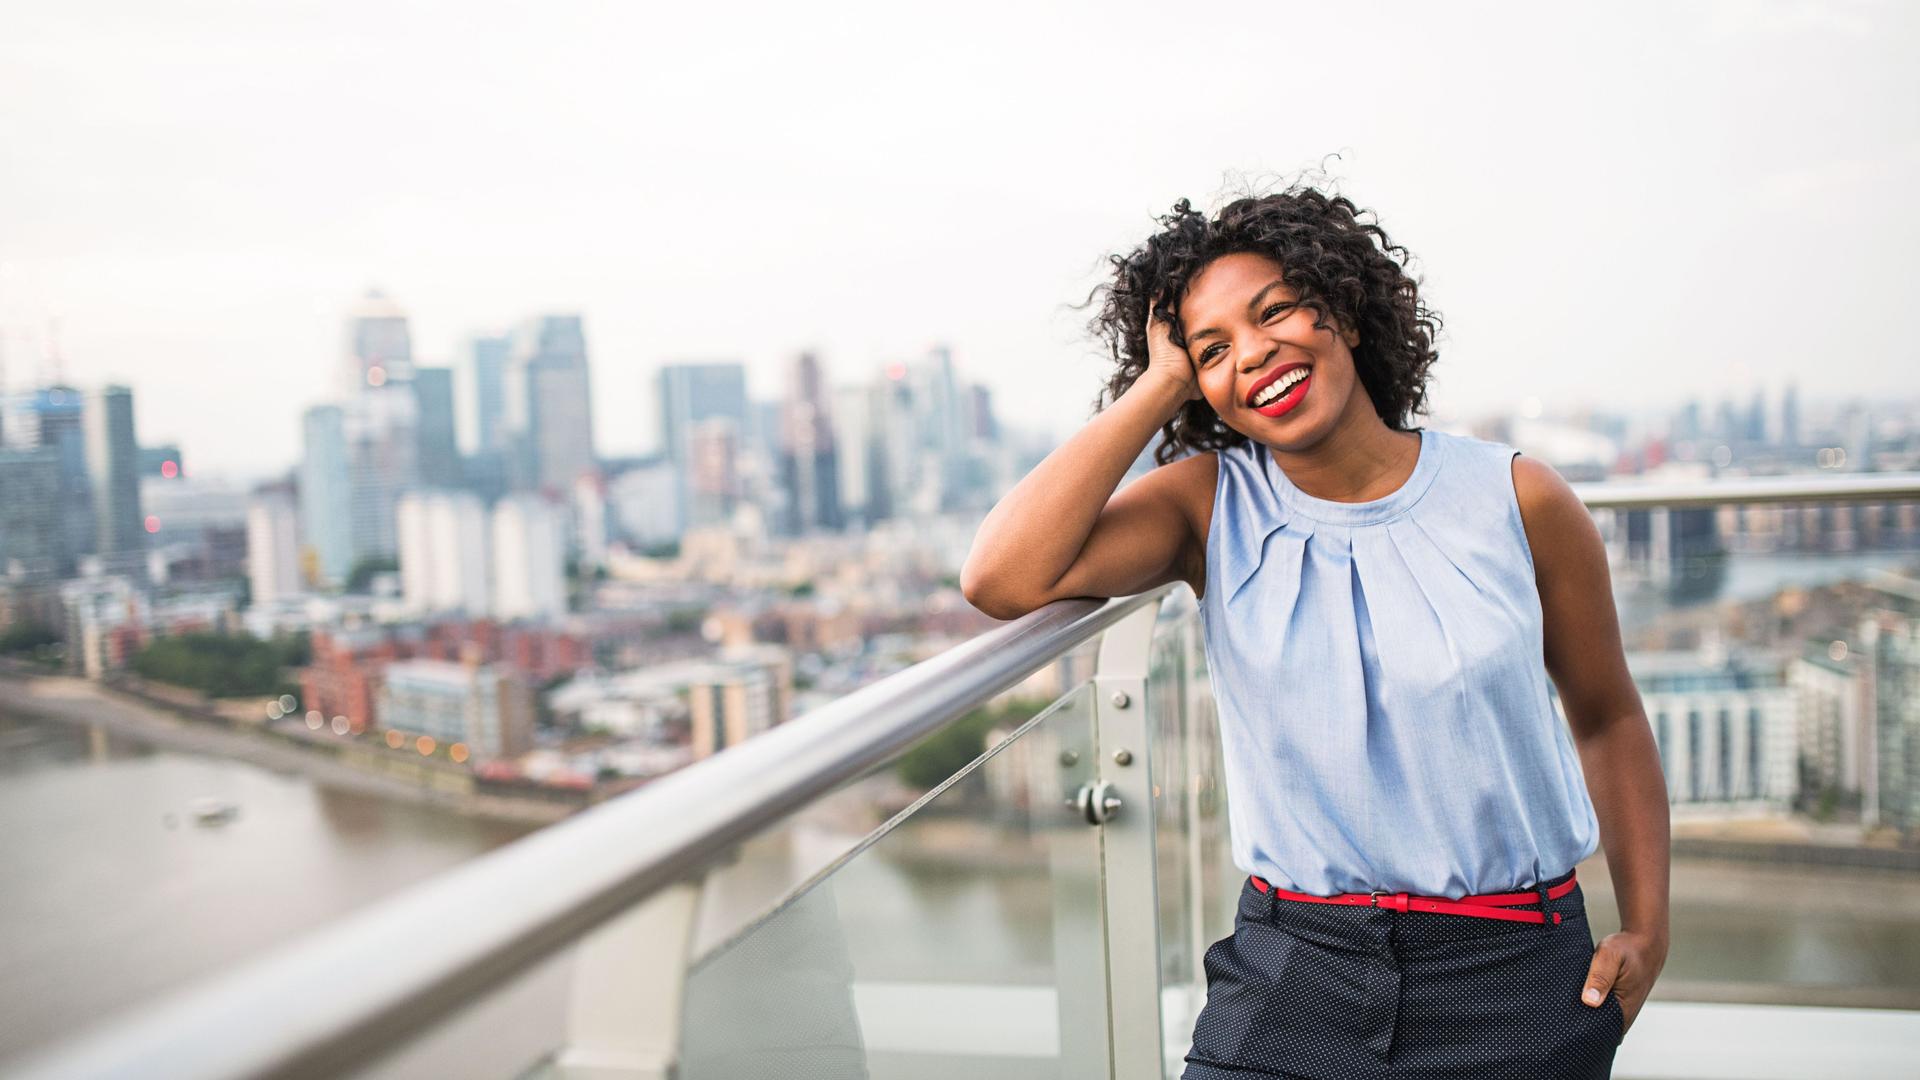 Junge Frau lehnt lachend auf Brückengeländer mit Großstadtkulisse im Hintergrund.